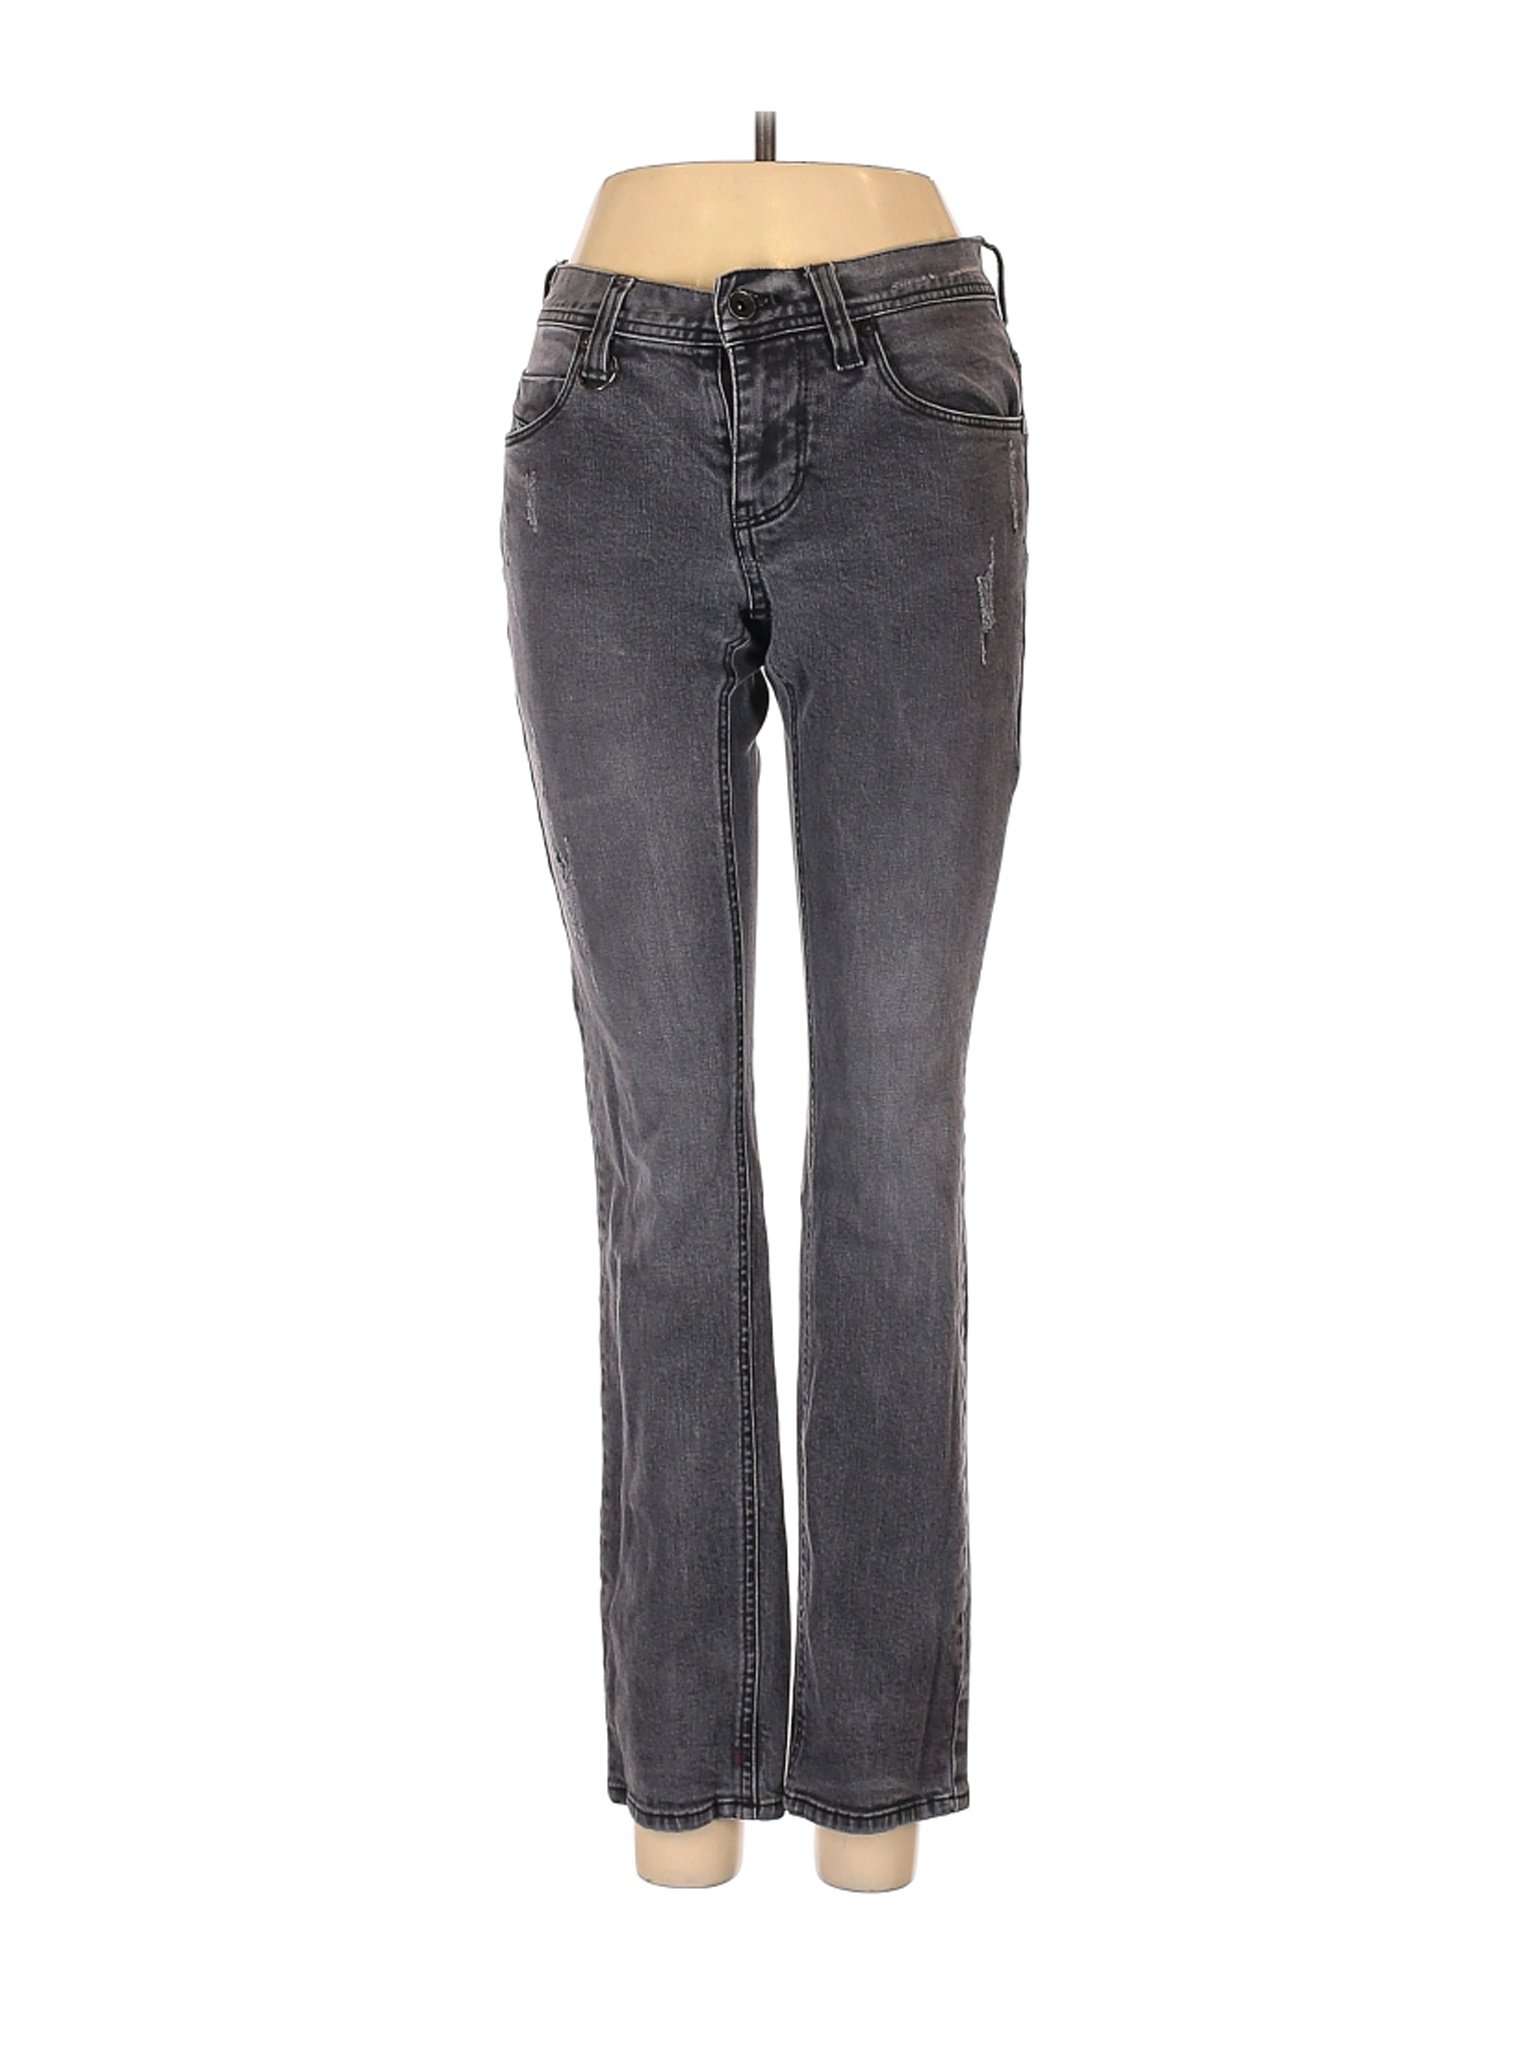 Empyre Women Gray Jeans 28W | eBay